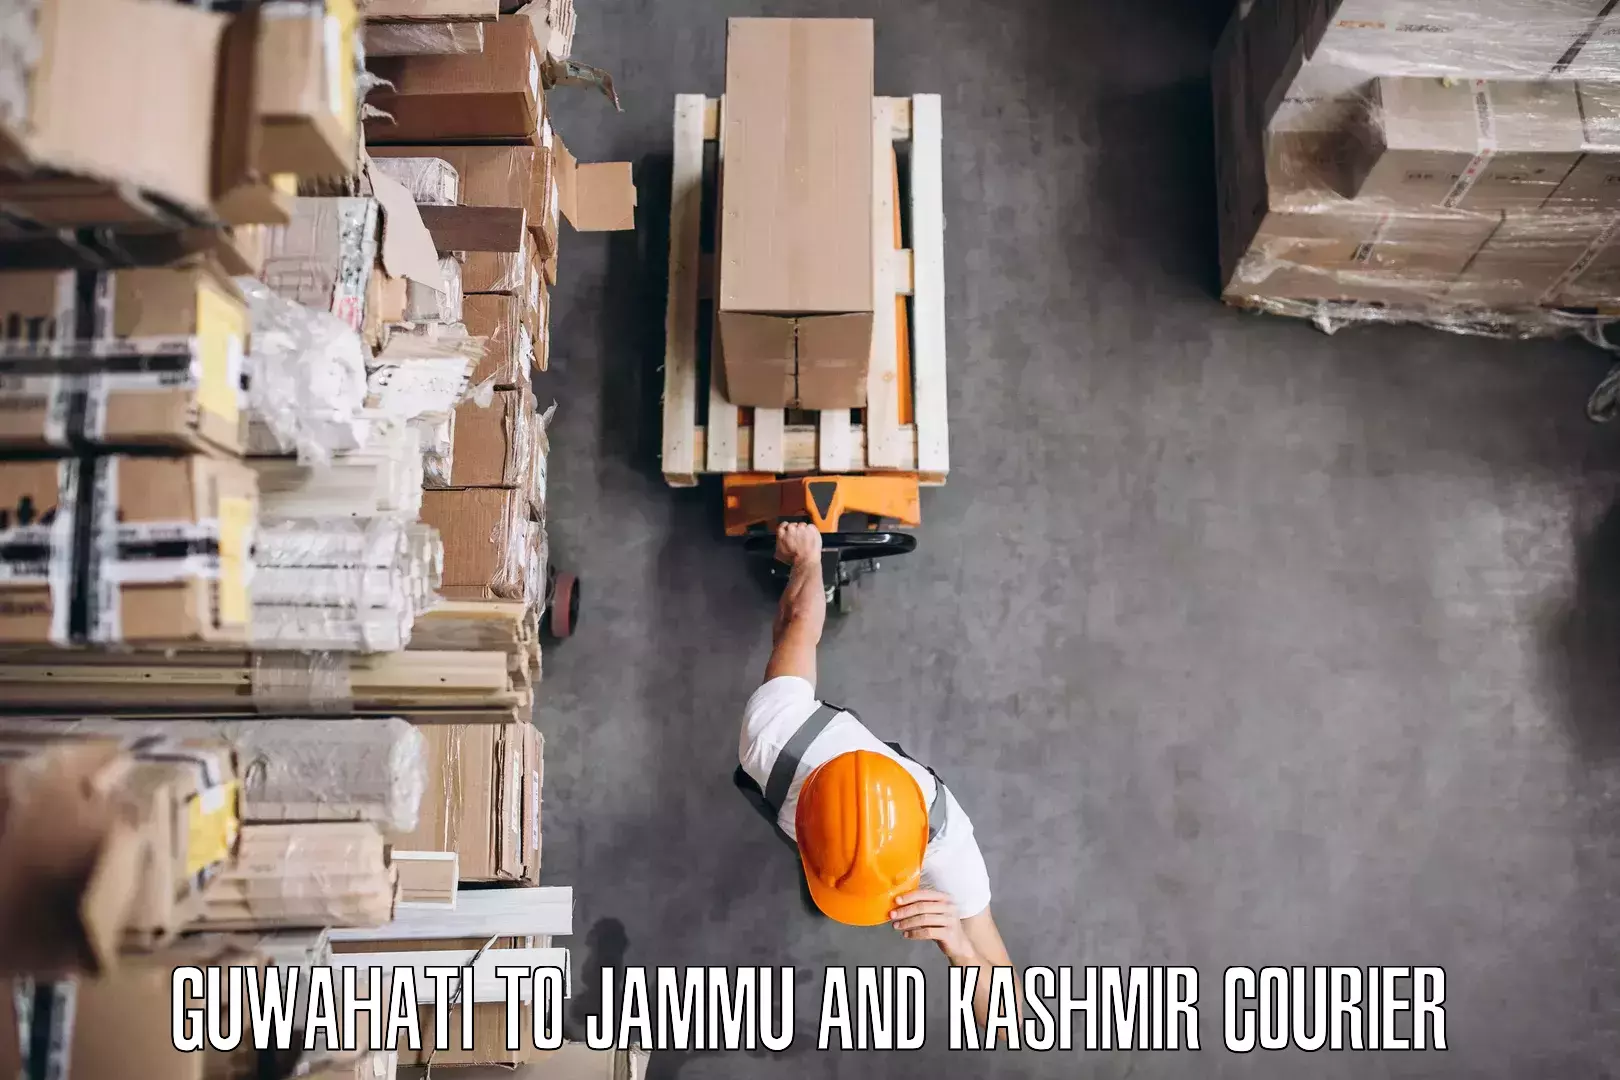 Furniture transport professionals Guwahati to Srinagar Kashmir